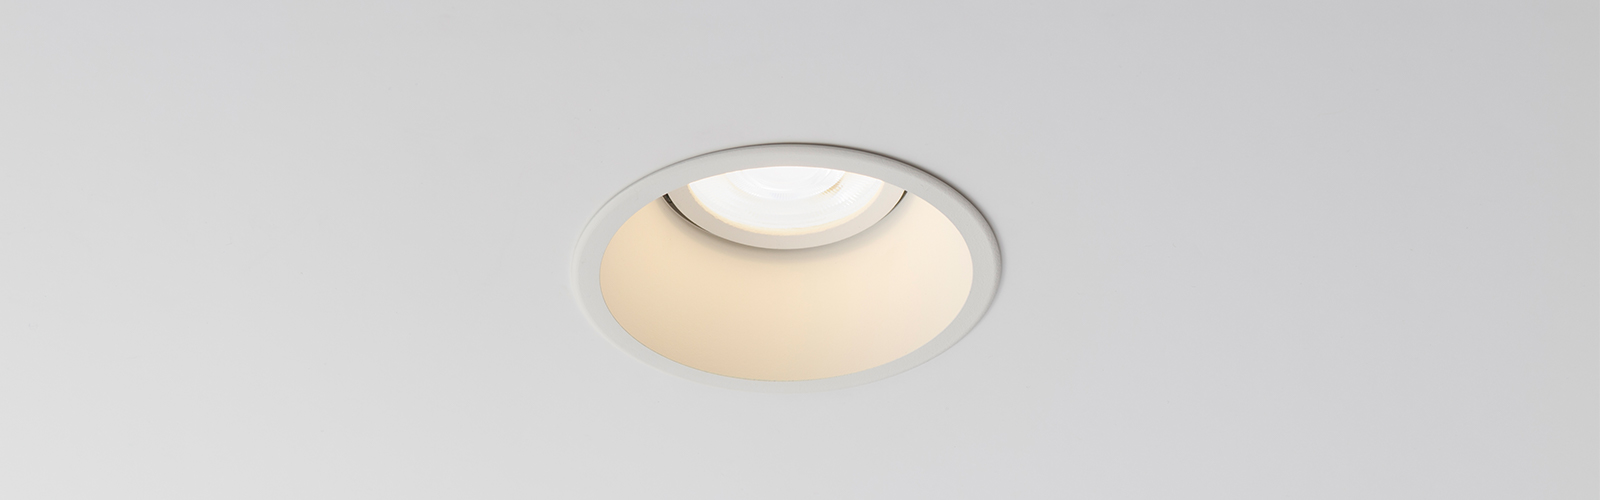 Fenos LED Lighting Recessed Downlight Fitran C